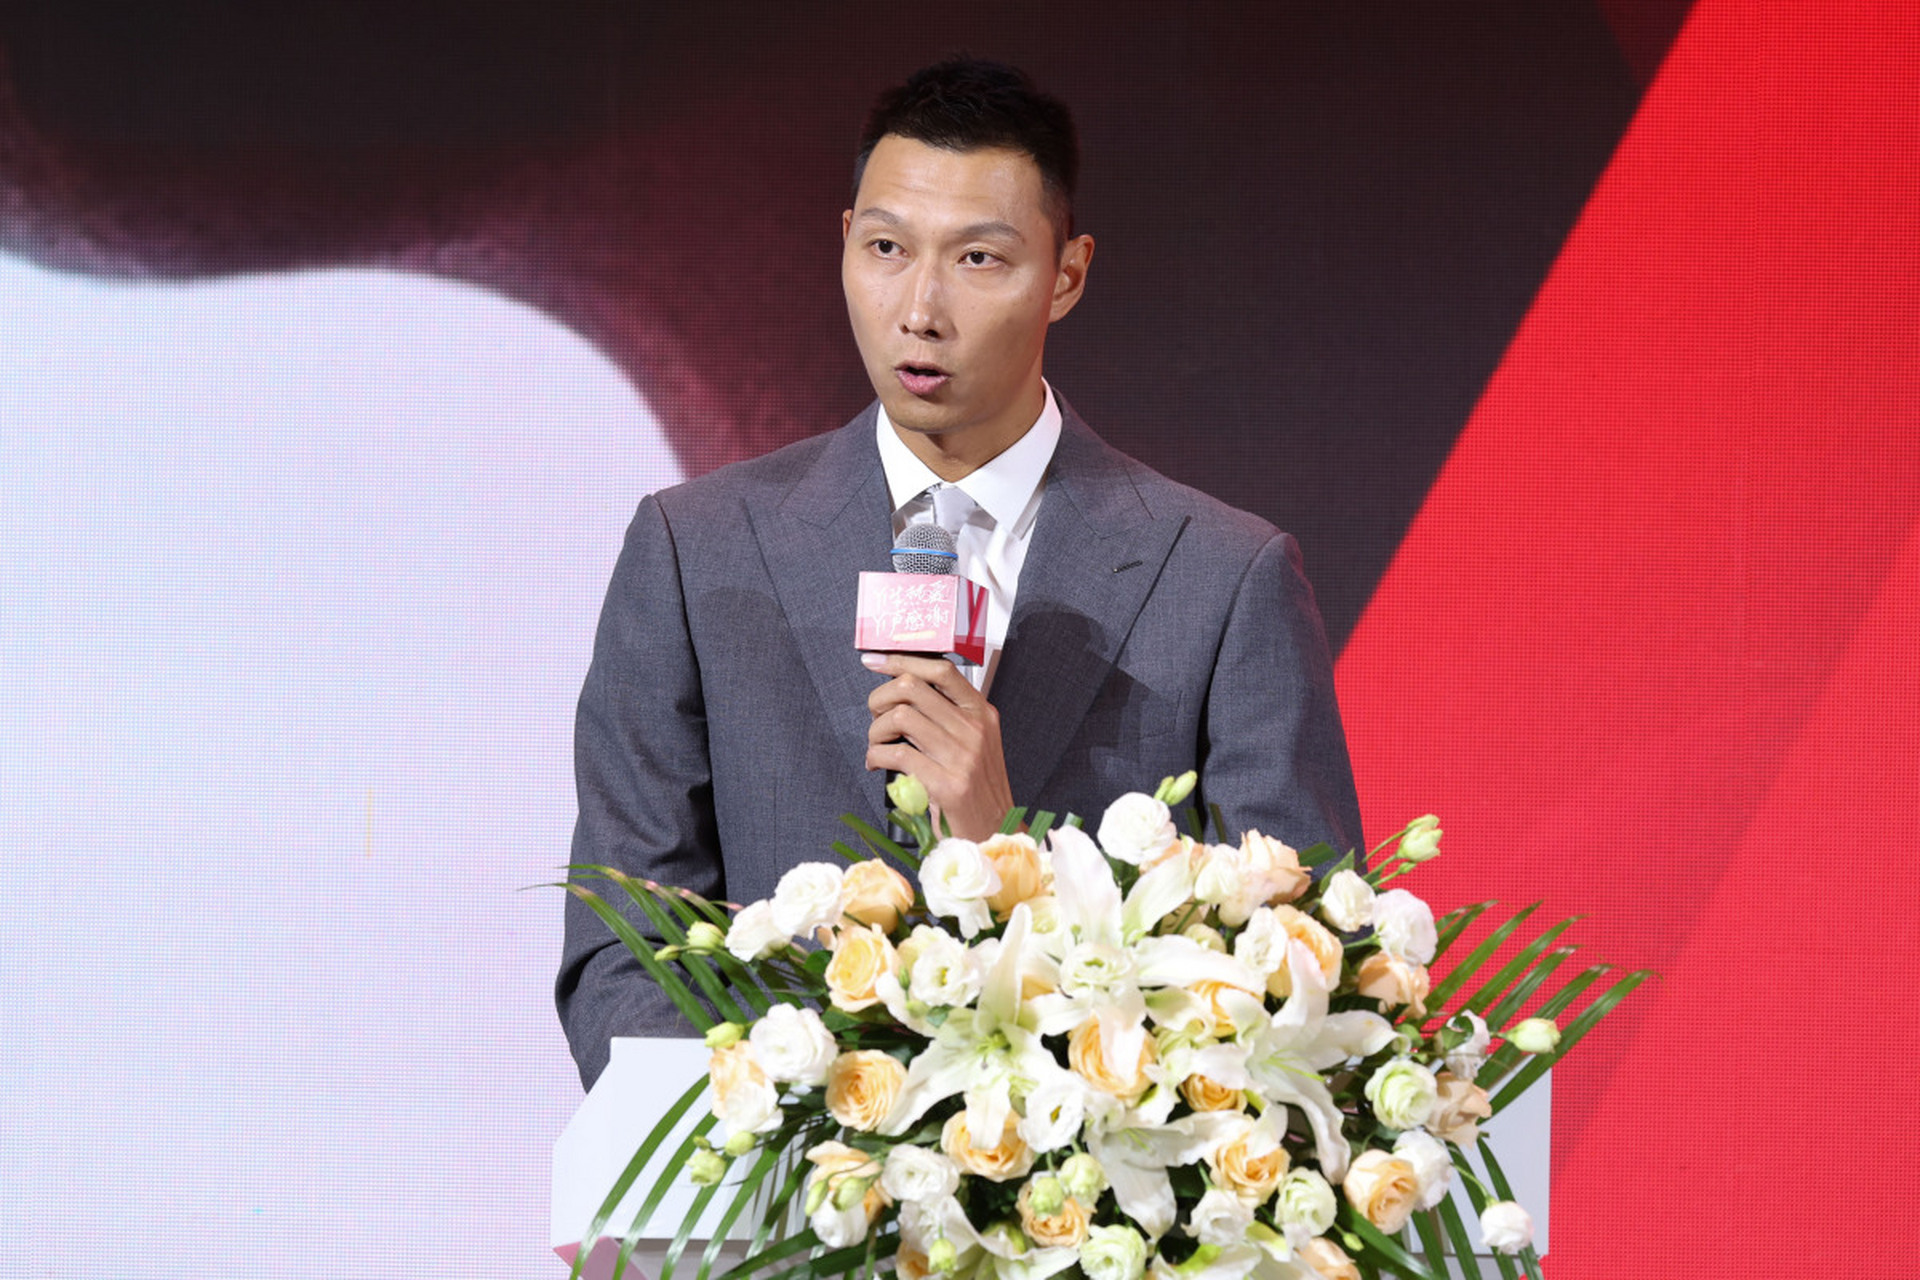 在众多篮球爱好者的瞩目下,中国篮球巨星易建联于近日庄重地举行了他